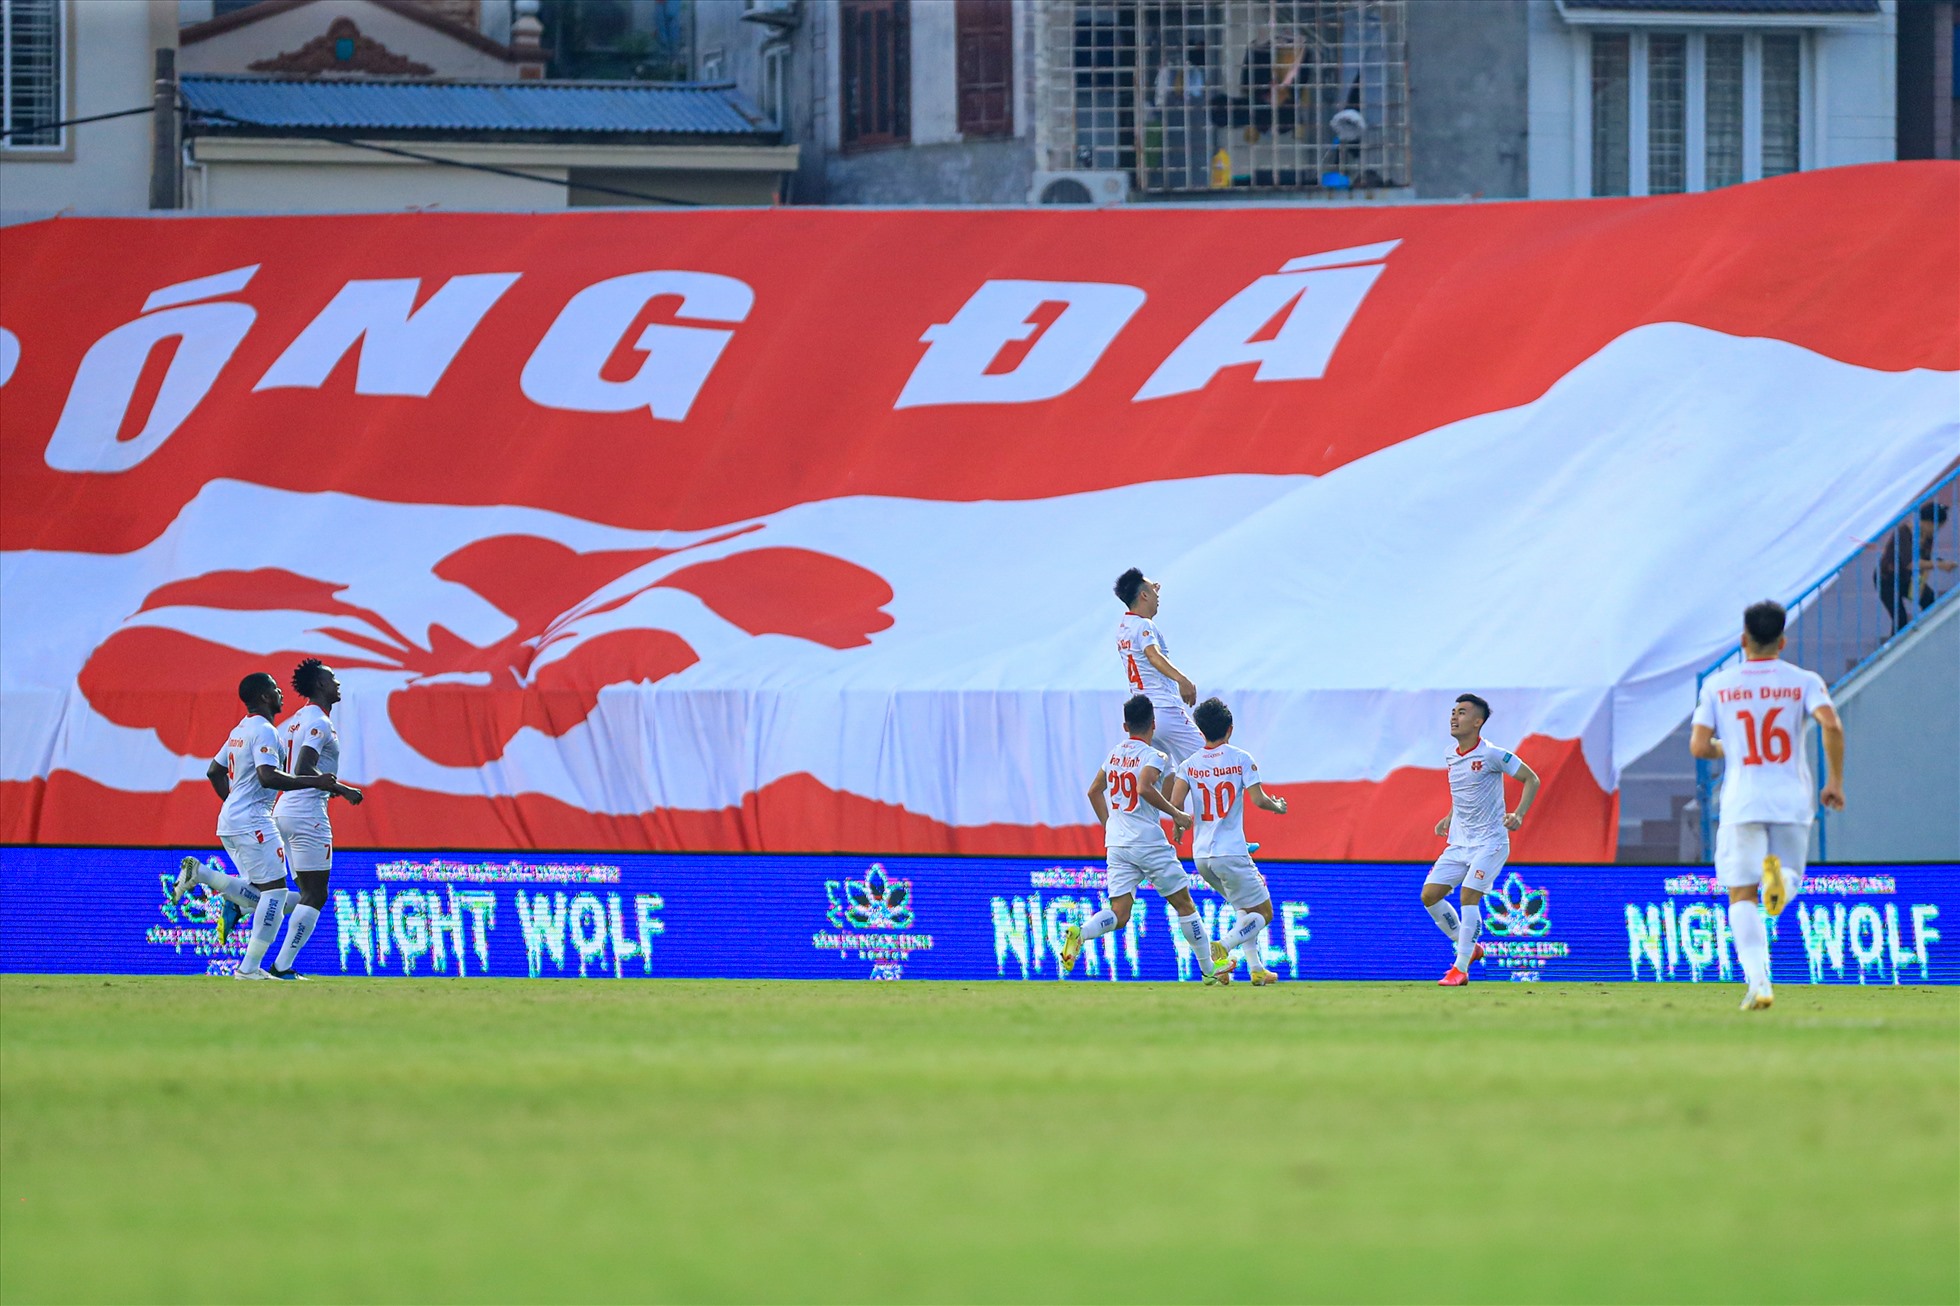 Câu lạc bộ Hải Phòng bất ngờ có được bàn mở tỉ số sau sai lầm của Bùi Hoàng Việt Anh ở phút 17.